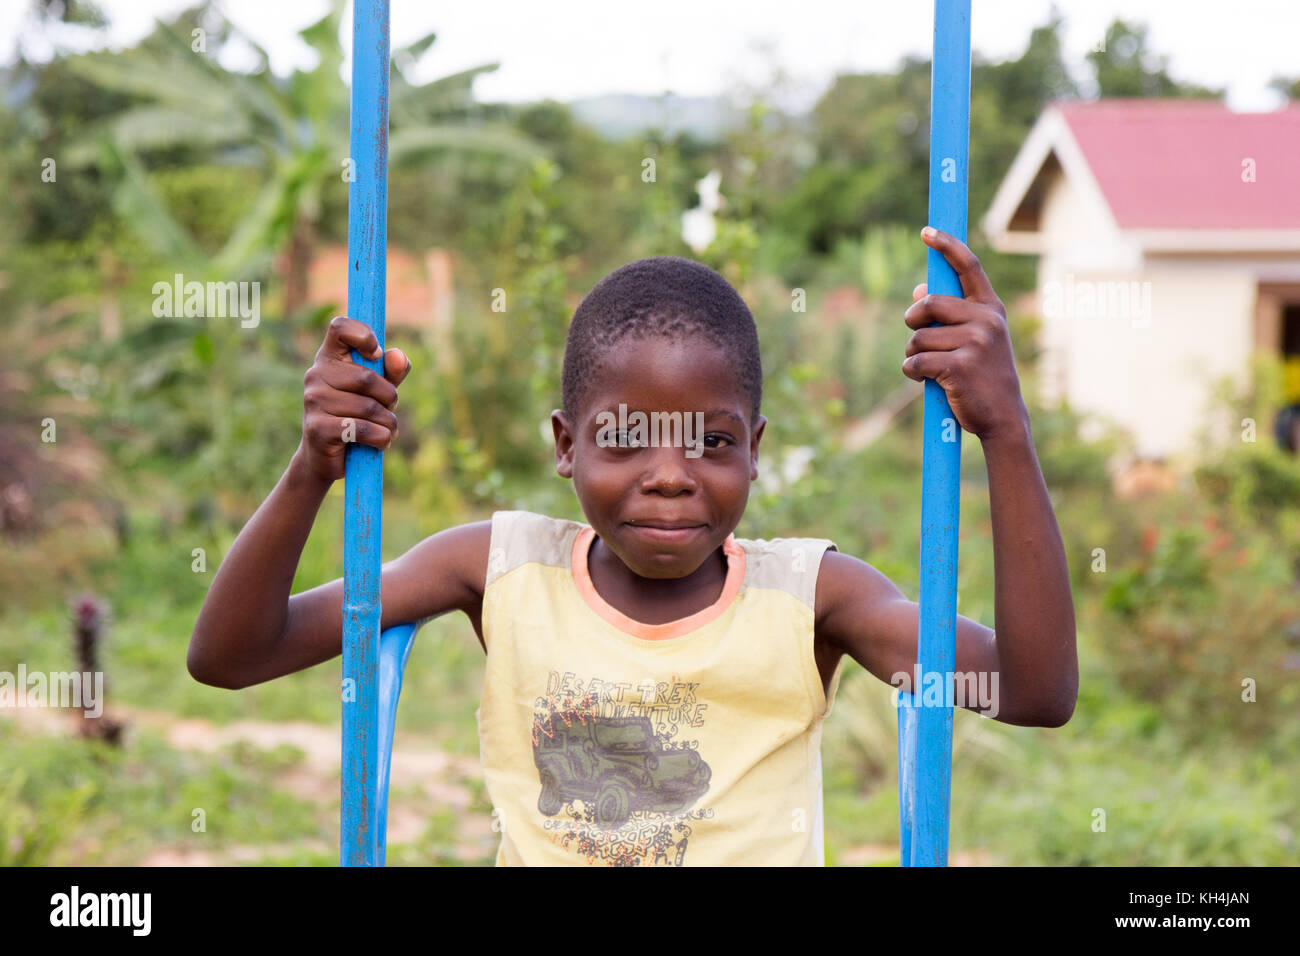 A smiling 13 ans garçon ougandais se balancer sur une balançoire colorée Banque D'Images